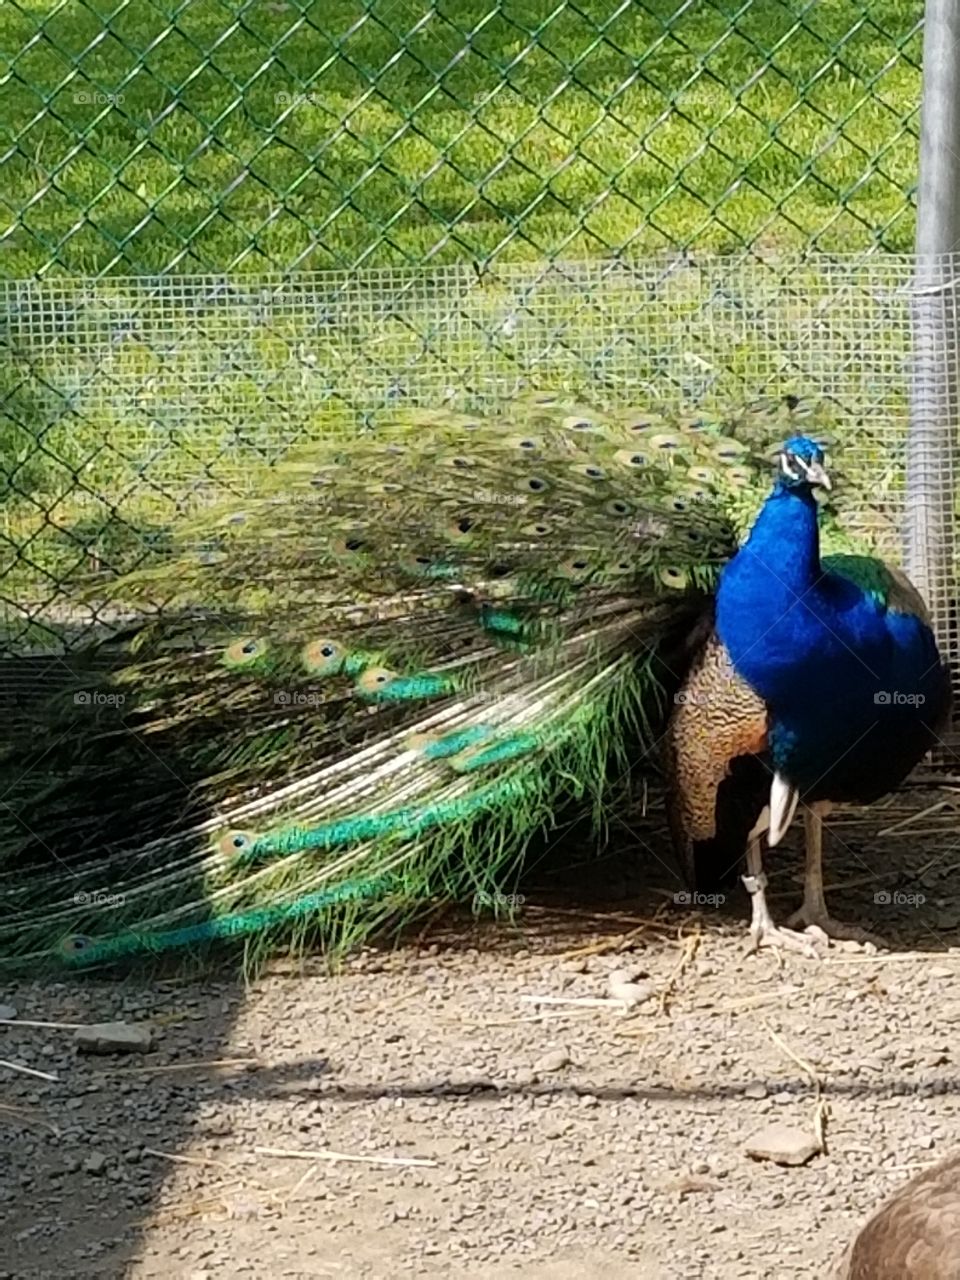 Peacock ruffled